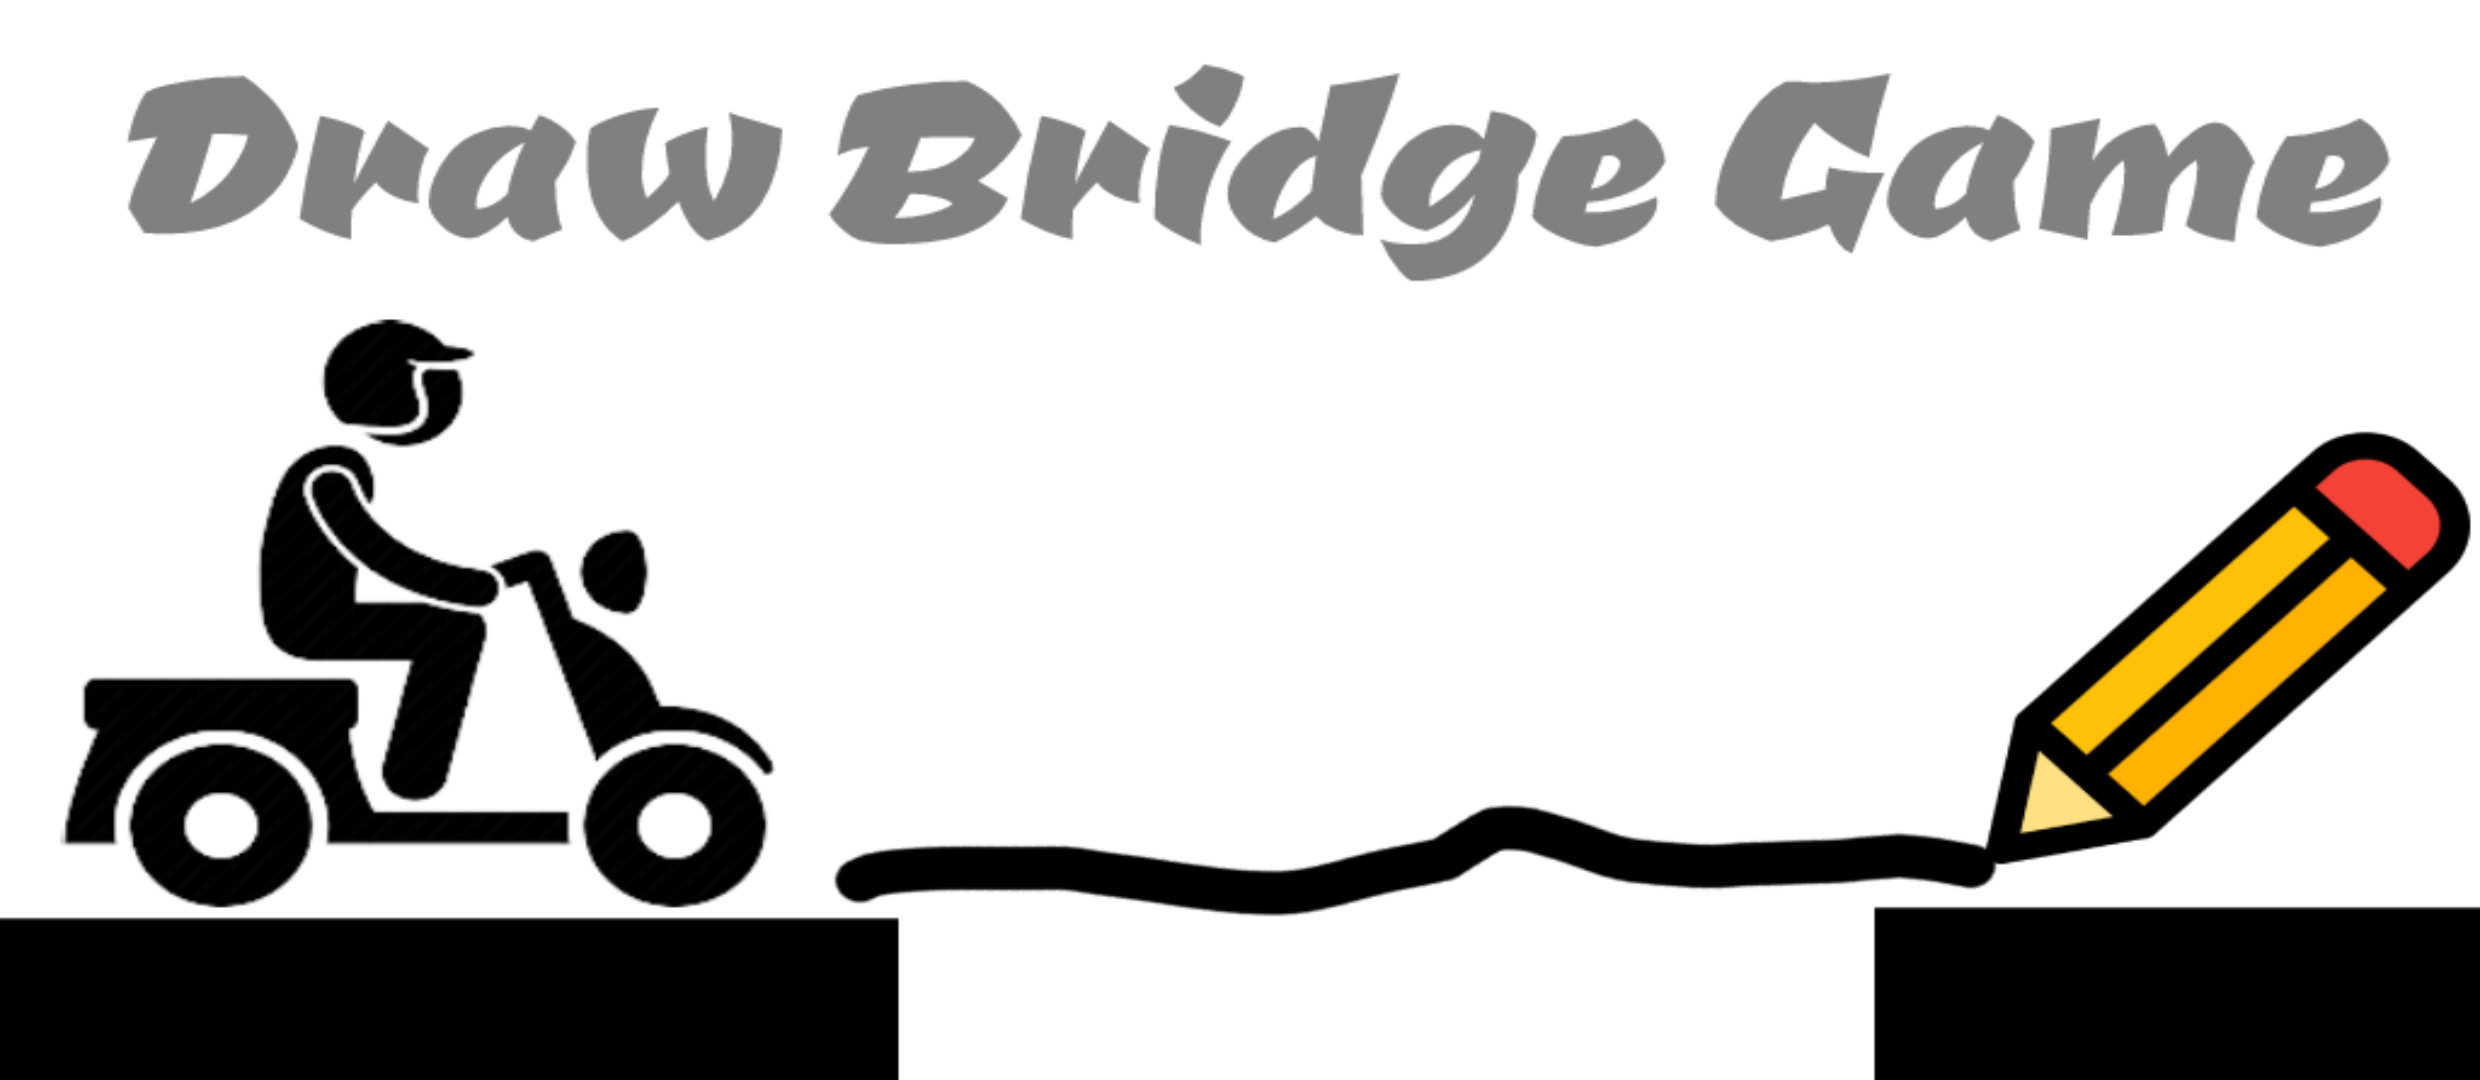 Screenshot 1 of Bridge-Spiel Puzzle zeichnen 1.0.1